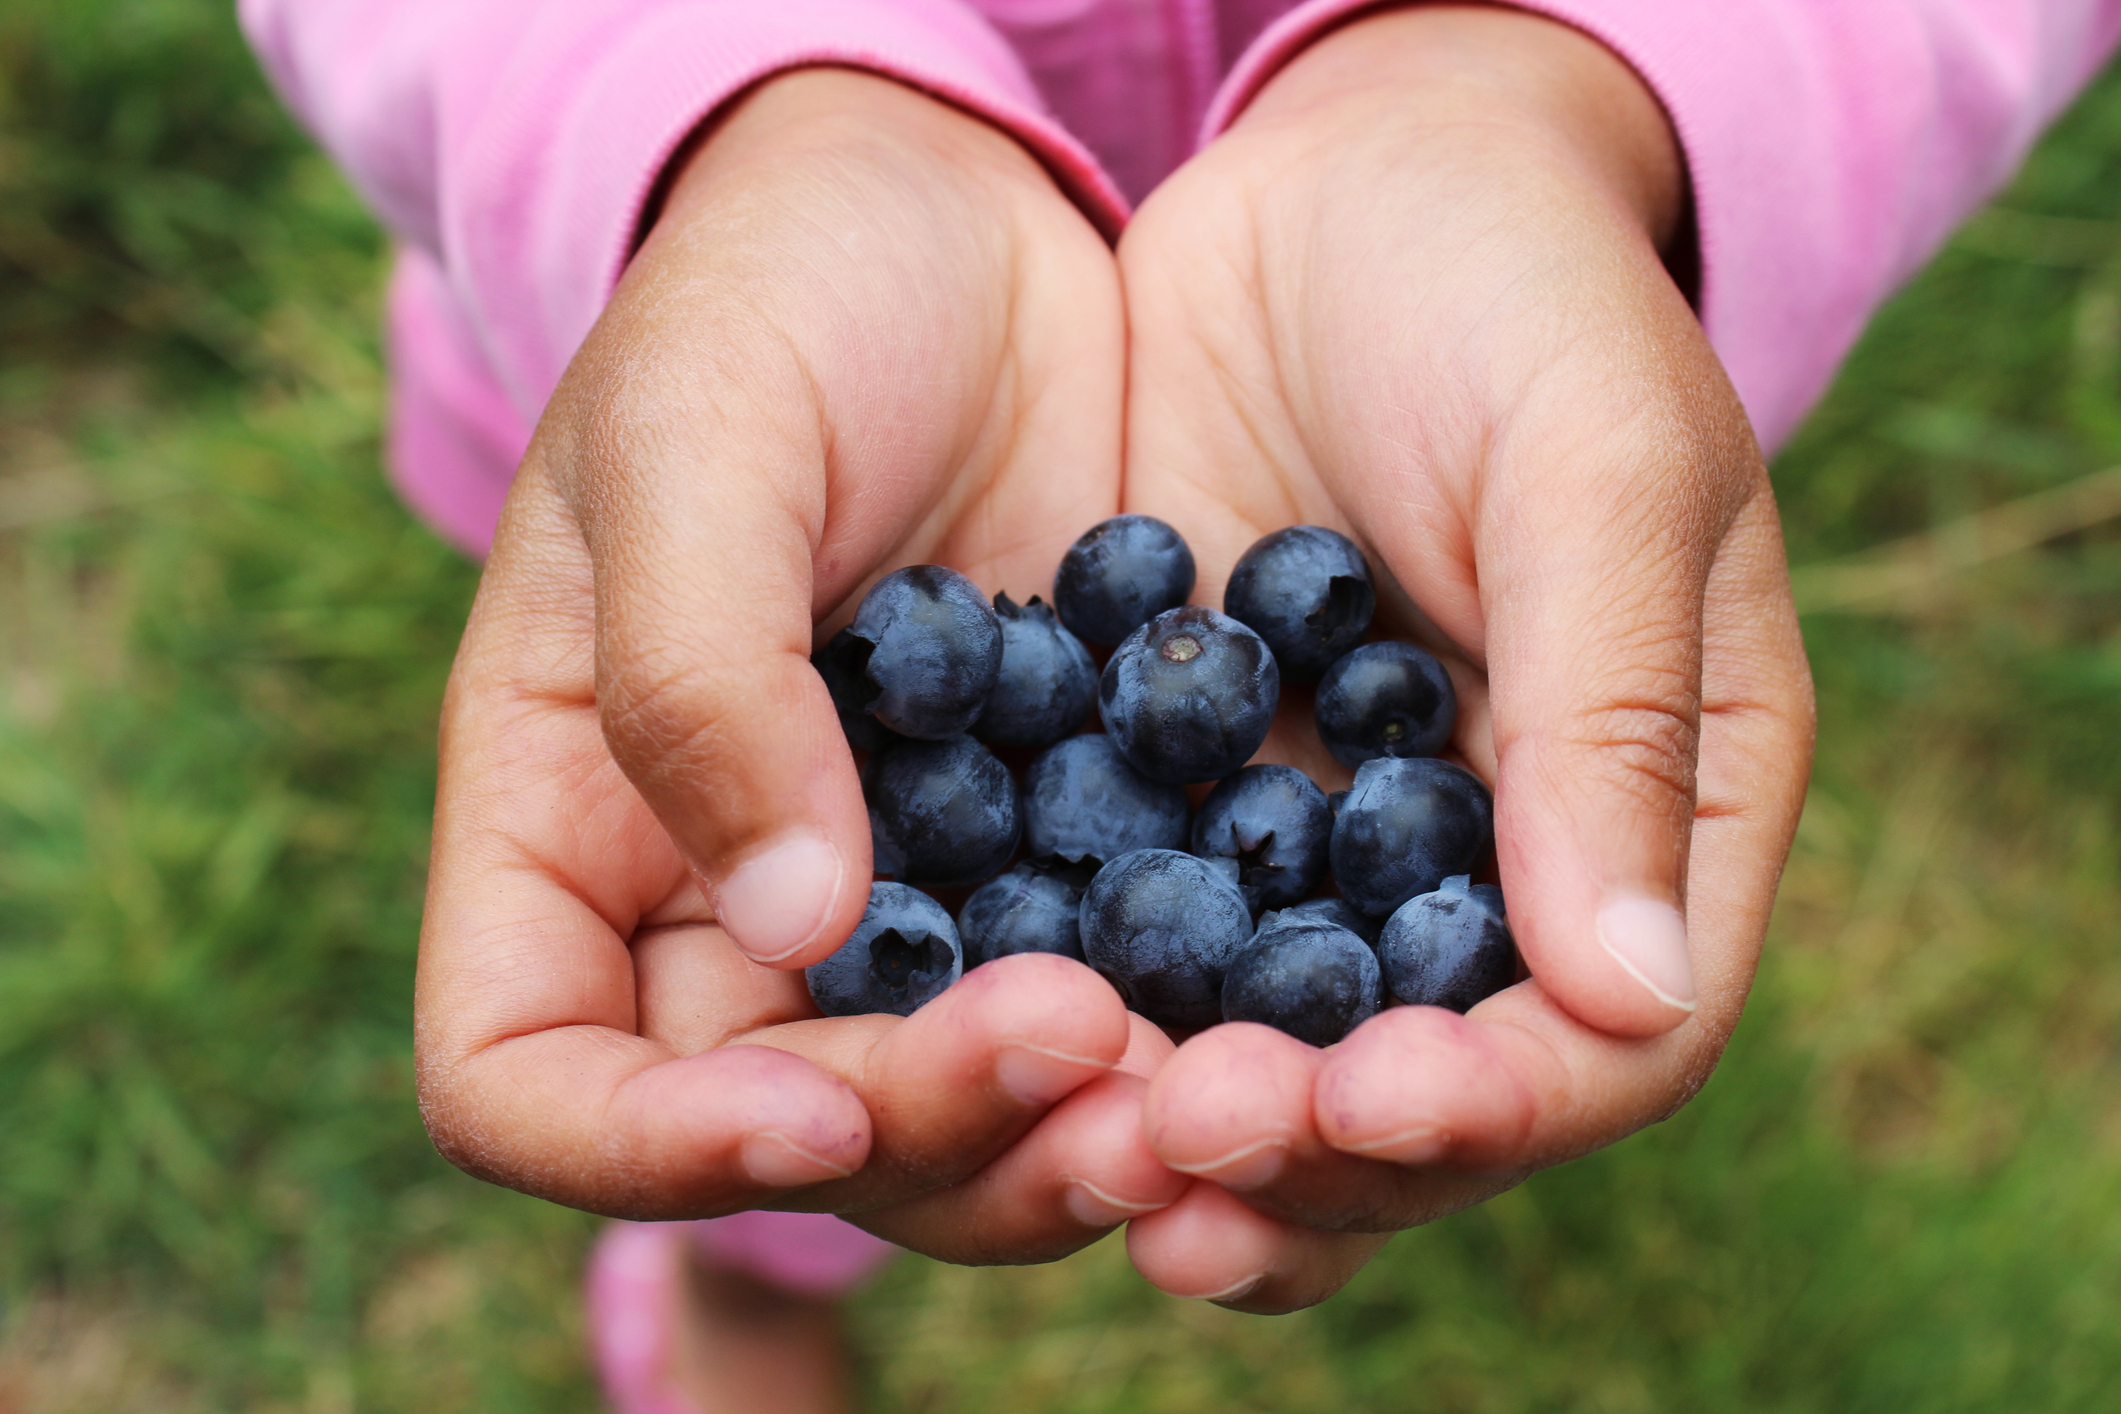 Hands of girl holding blueberries